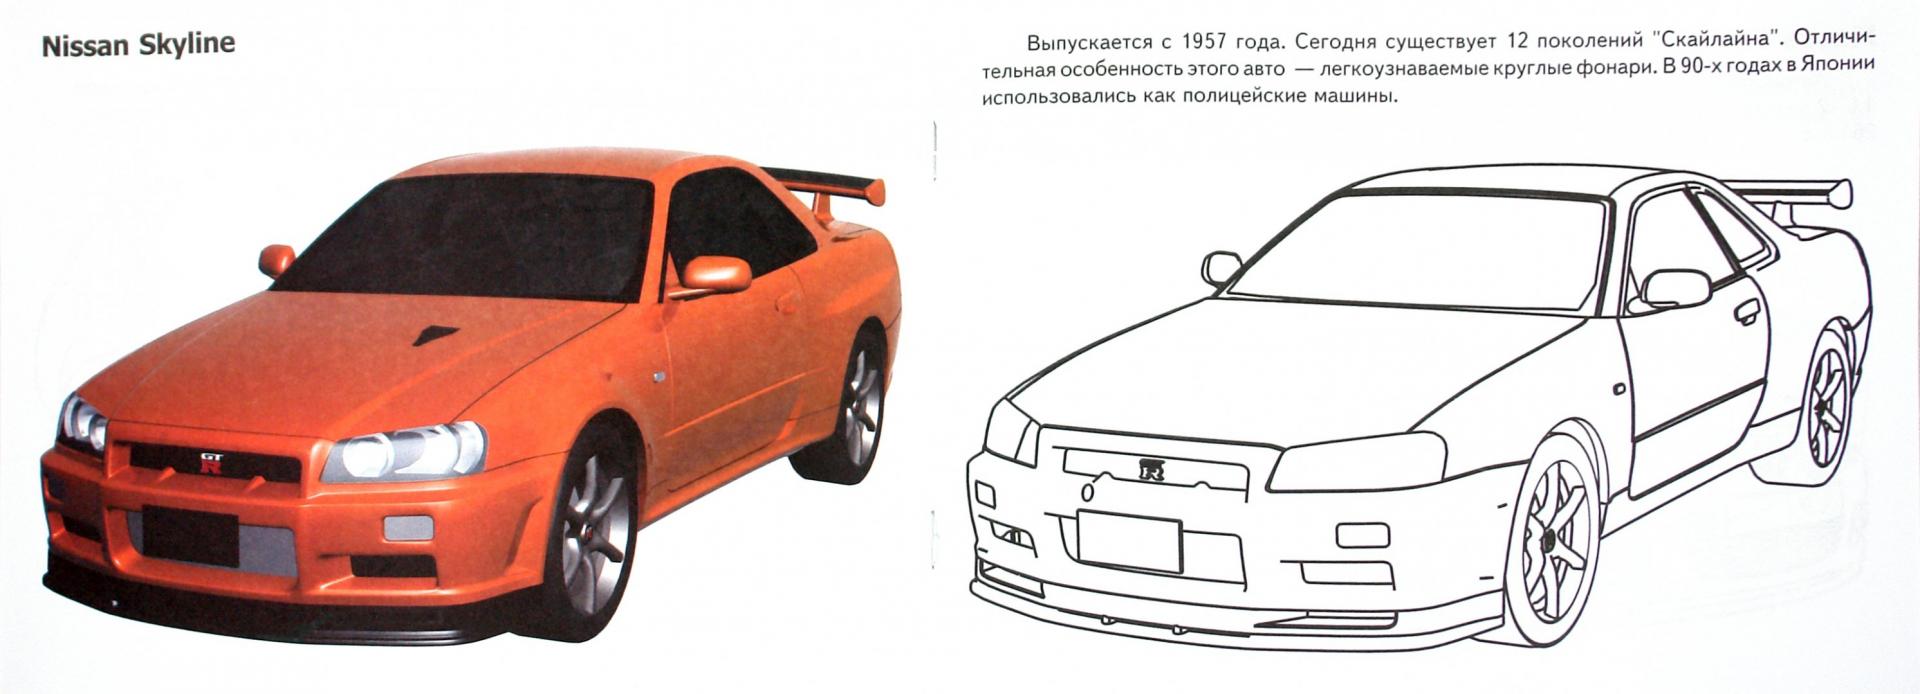 Иллюстрация 1 из 6 для Автомобили-модели мира. Япония | Лабиринт - книги. Источник: Лабиринт